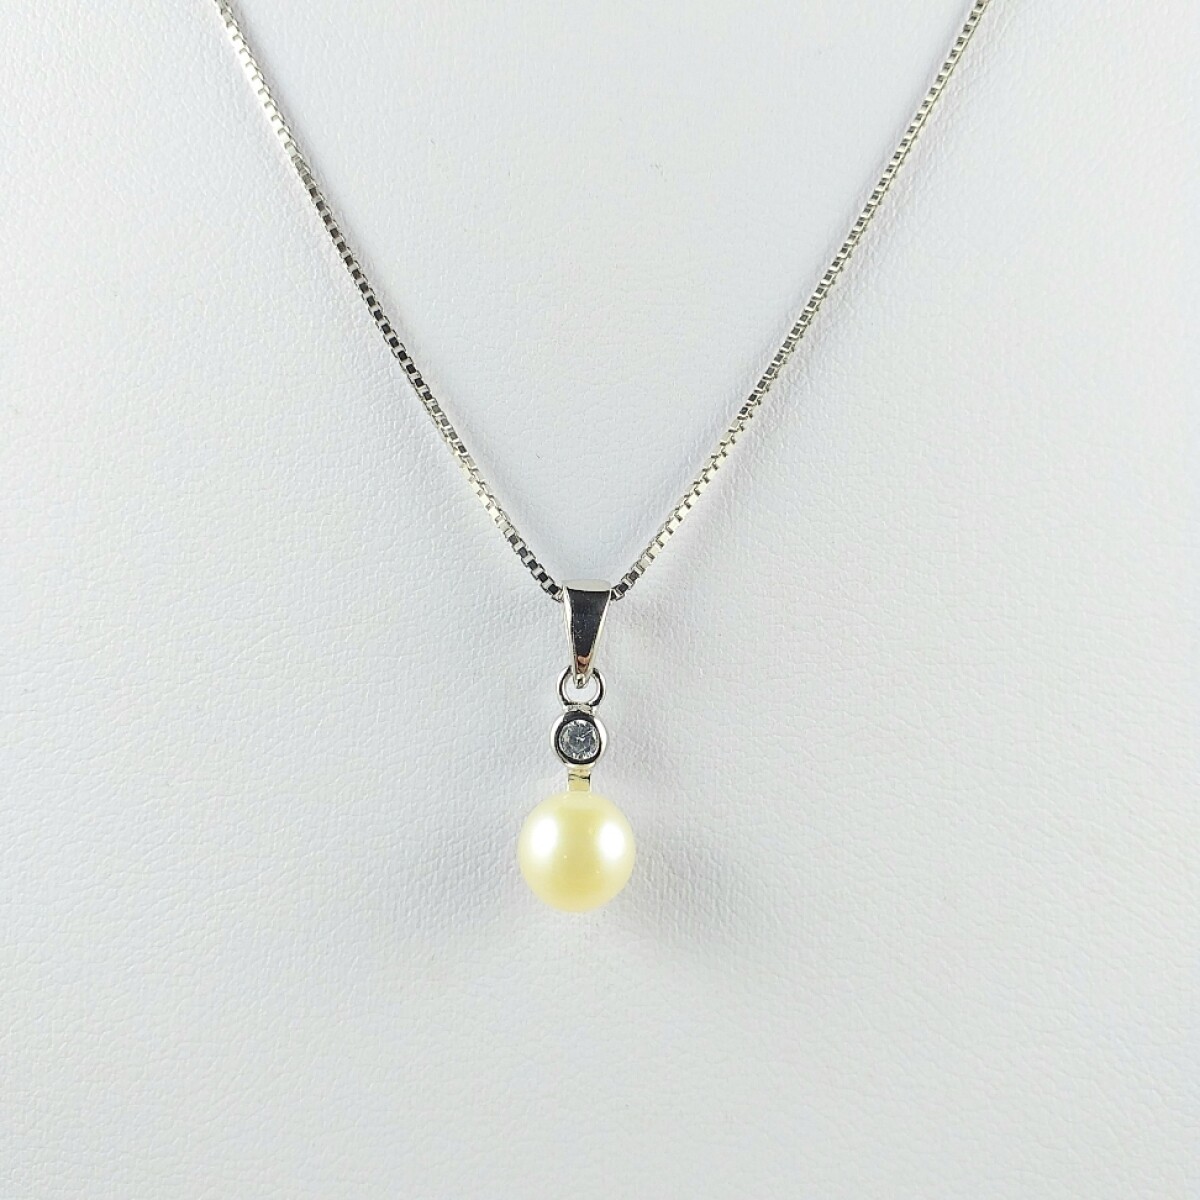 Colgante con perla natural de rió 6 1/2 mm y circonia de 3 mm, con cadena veneciana de plata y baño de oro gris. 